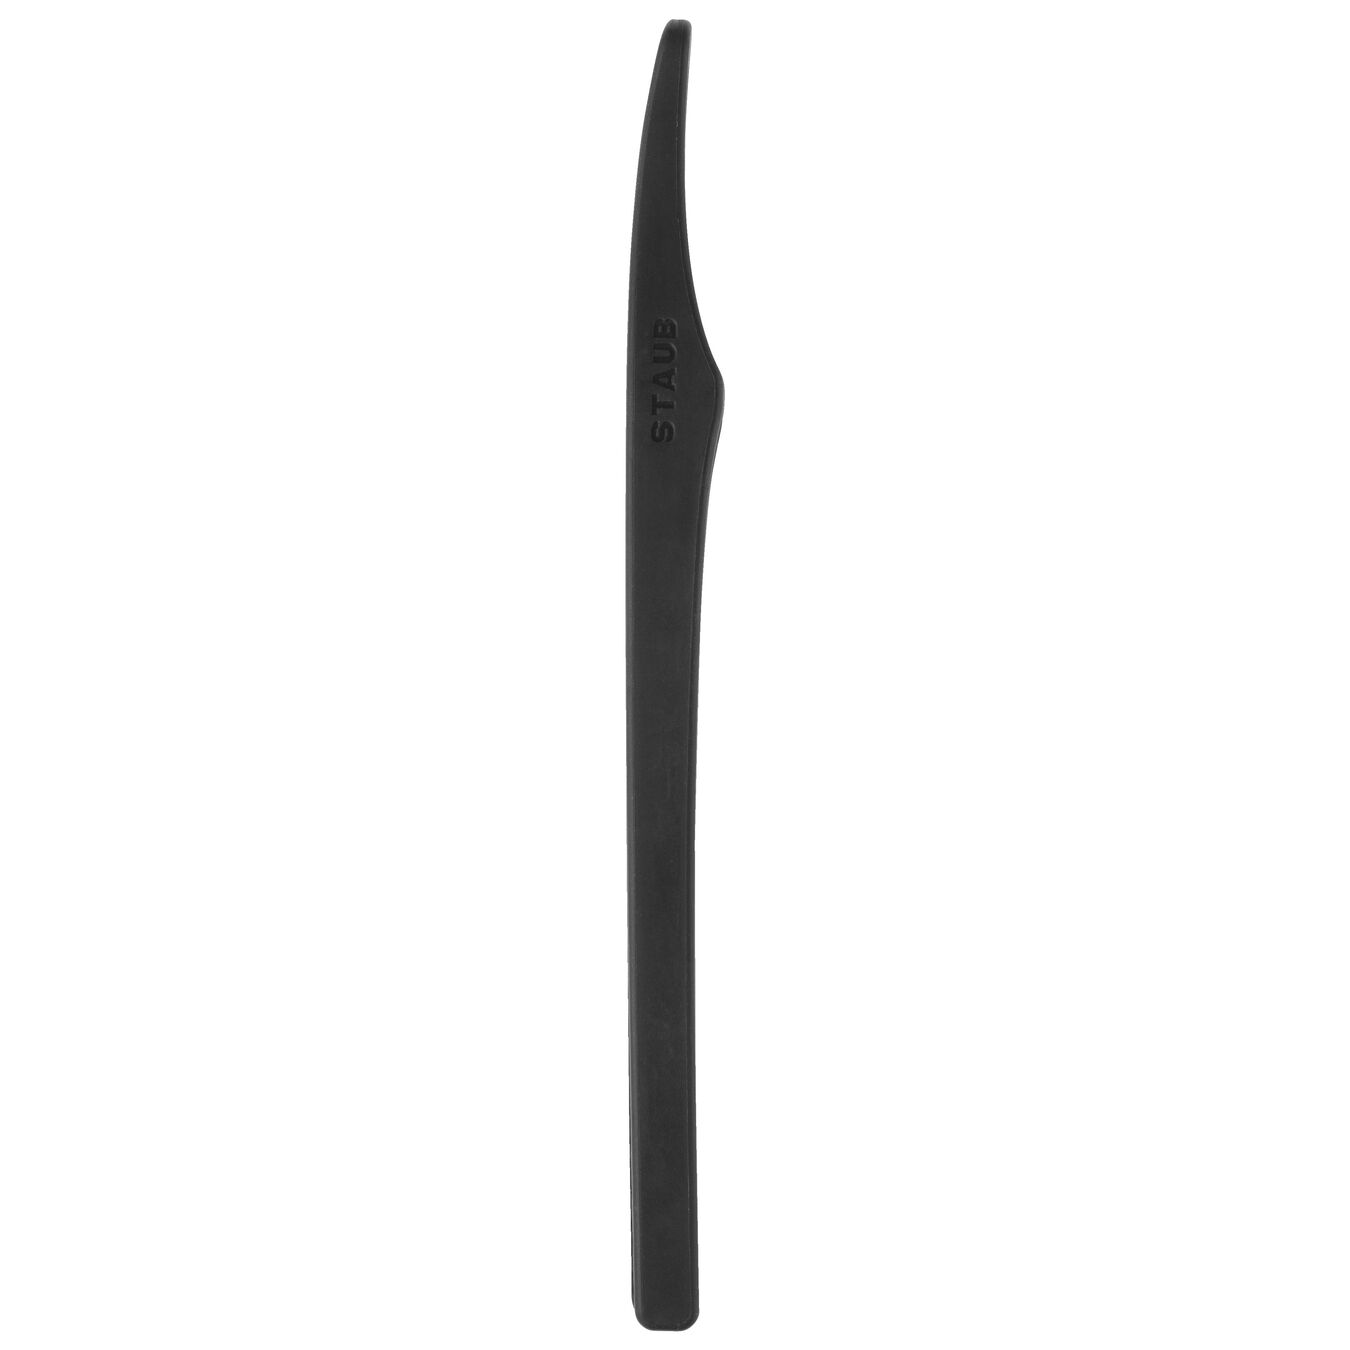 Zange, 31 cm, Silikon,,large 3